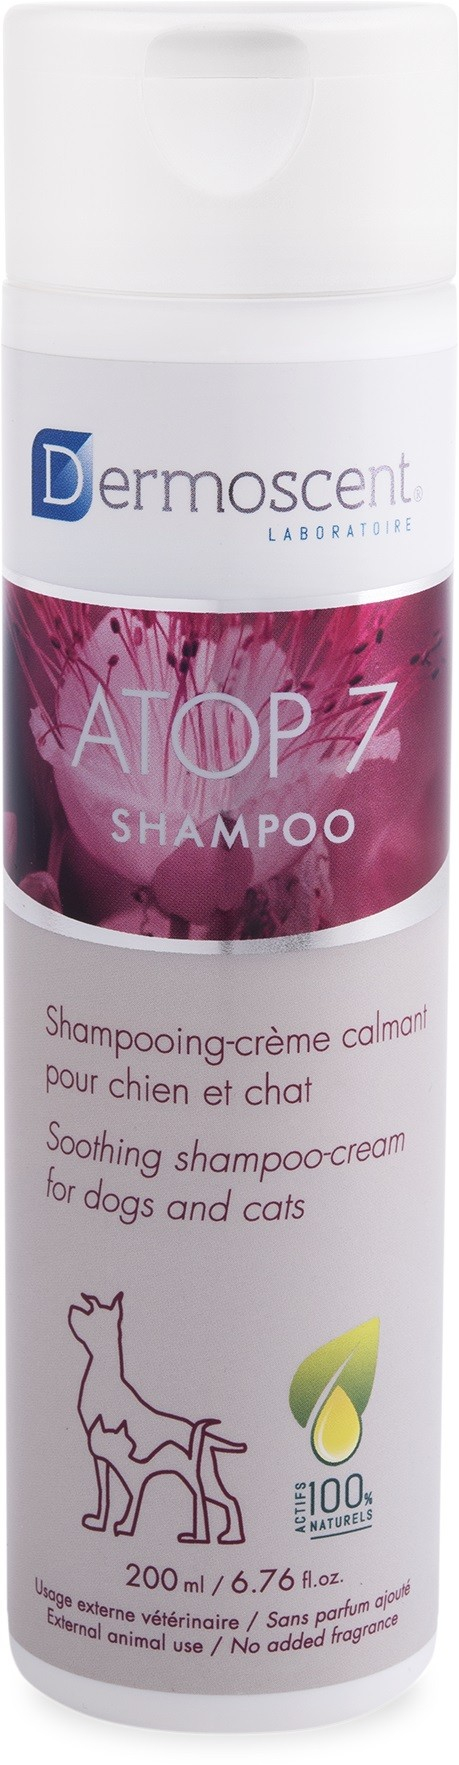 Dermoscent Atop 7 Beruhigendes Creme Shampoo